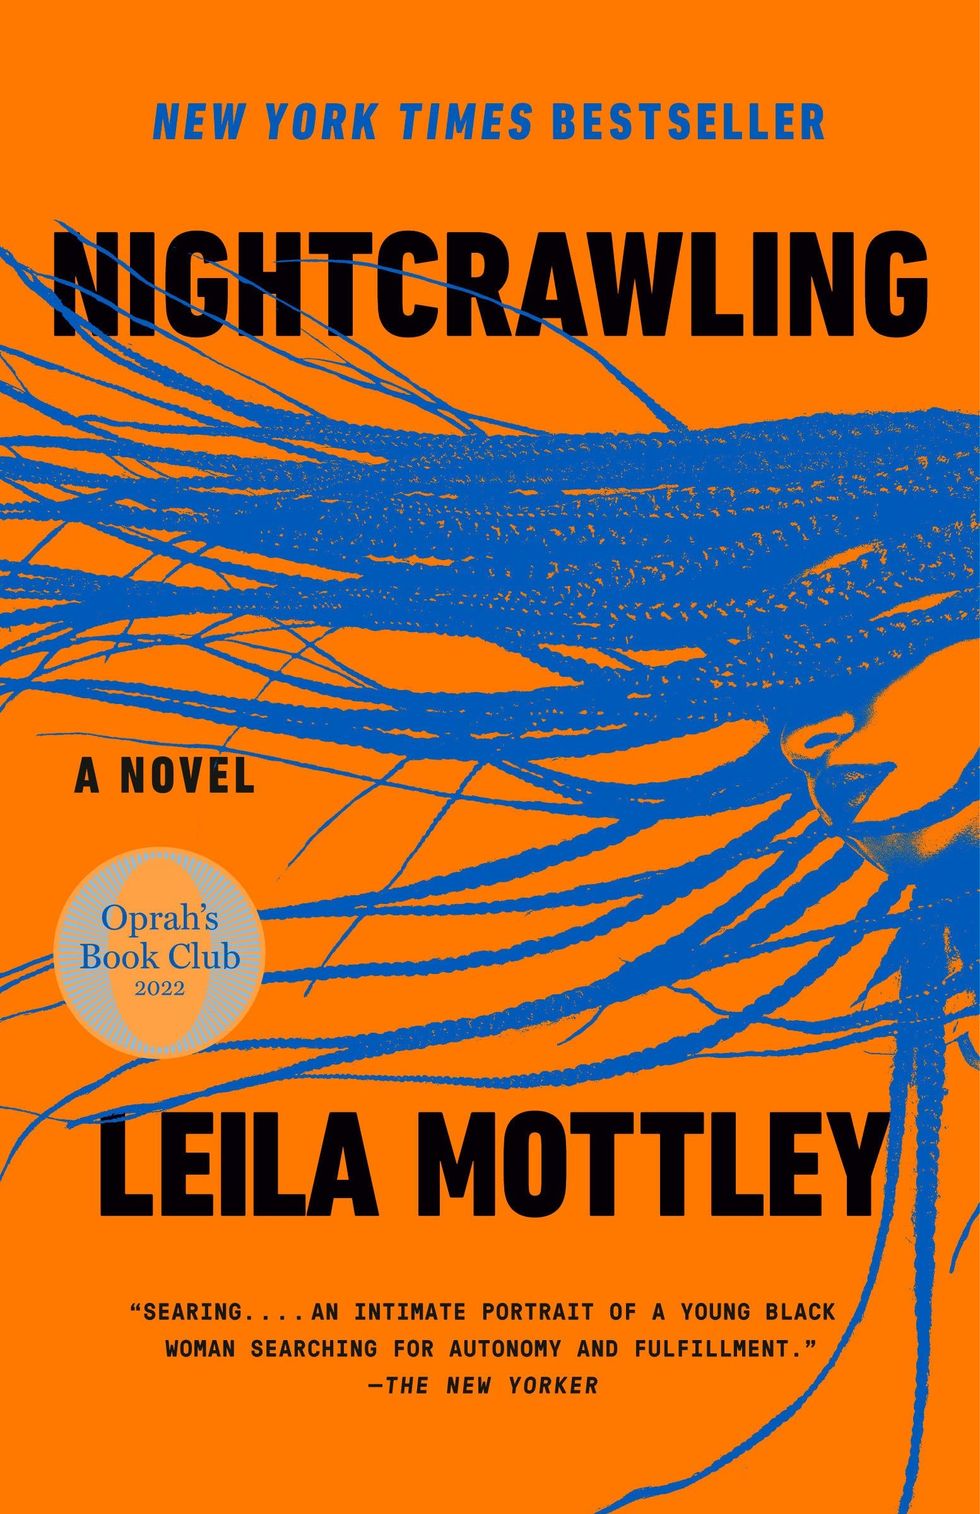 "Nightcrawling" by Leila Mottley